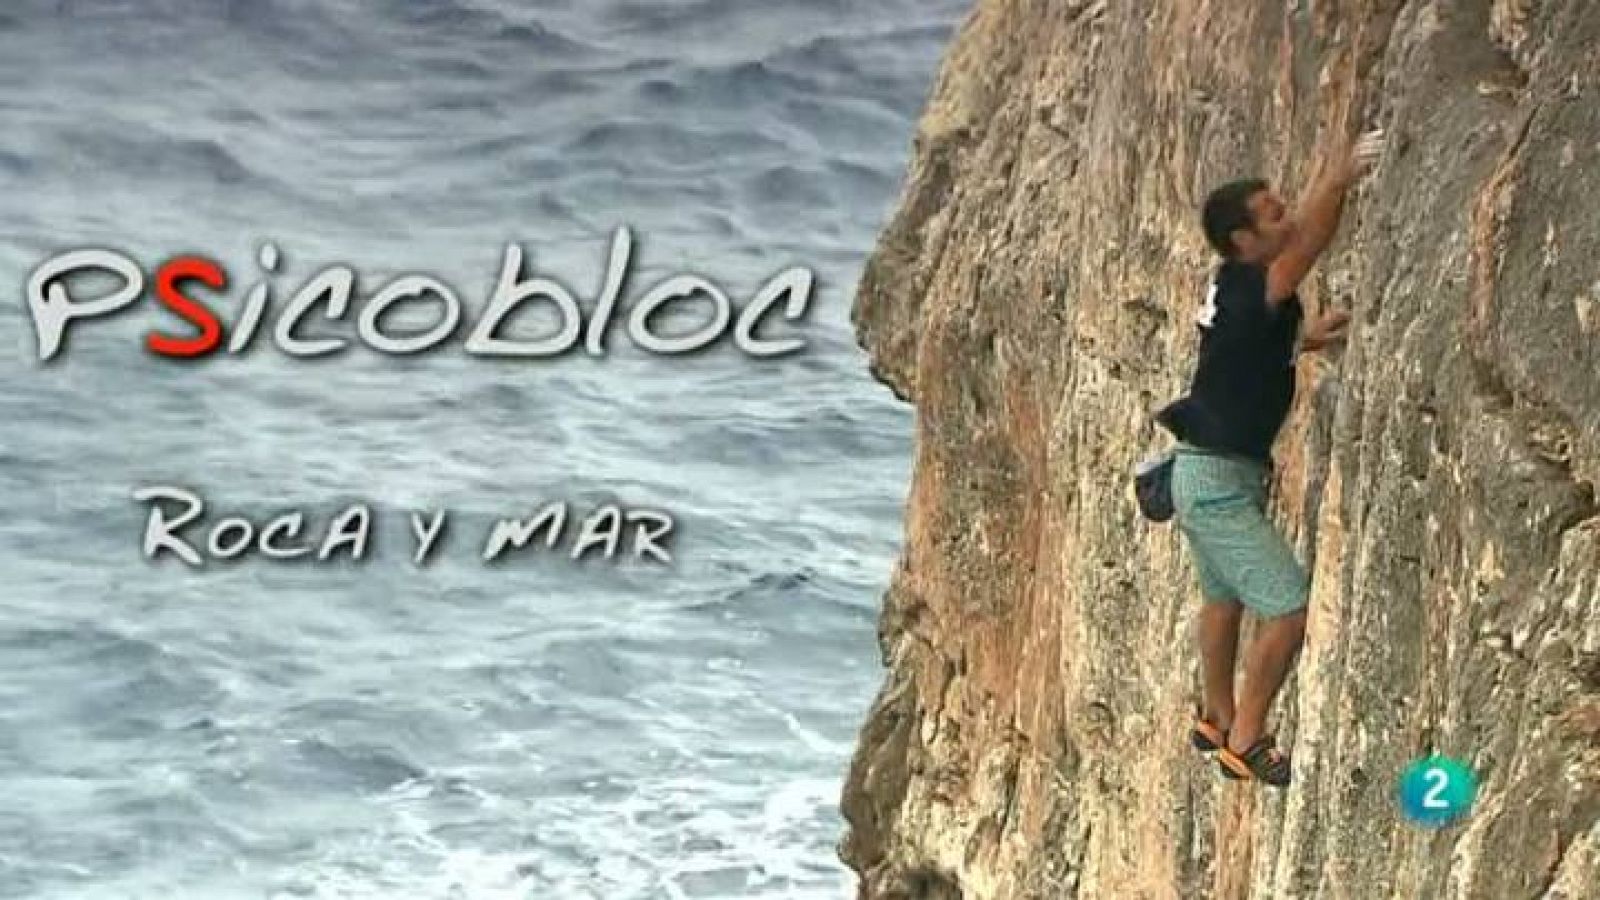 Navegación y Psicobloc en Mallorca - Ver ahora